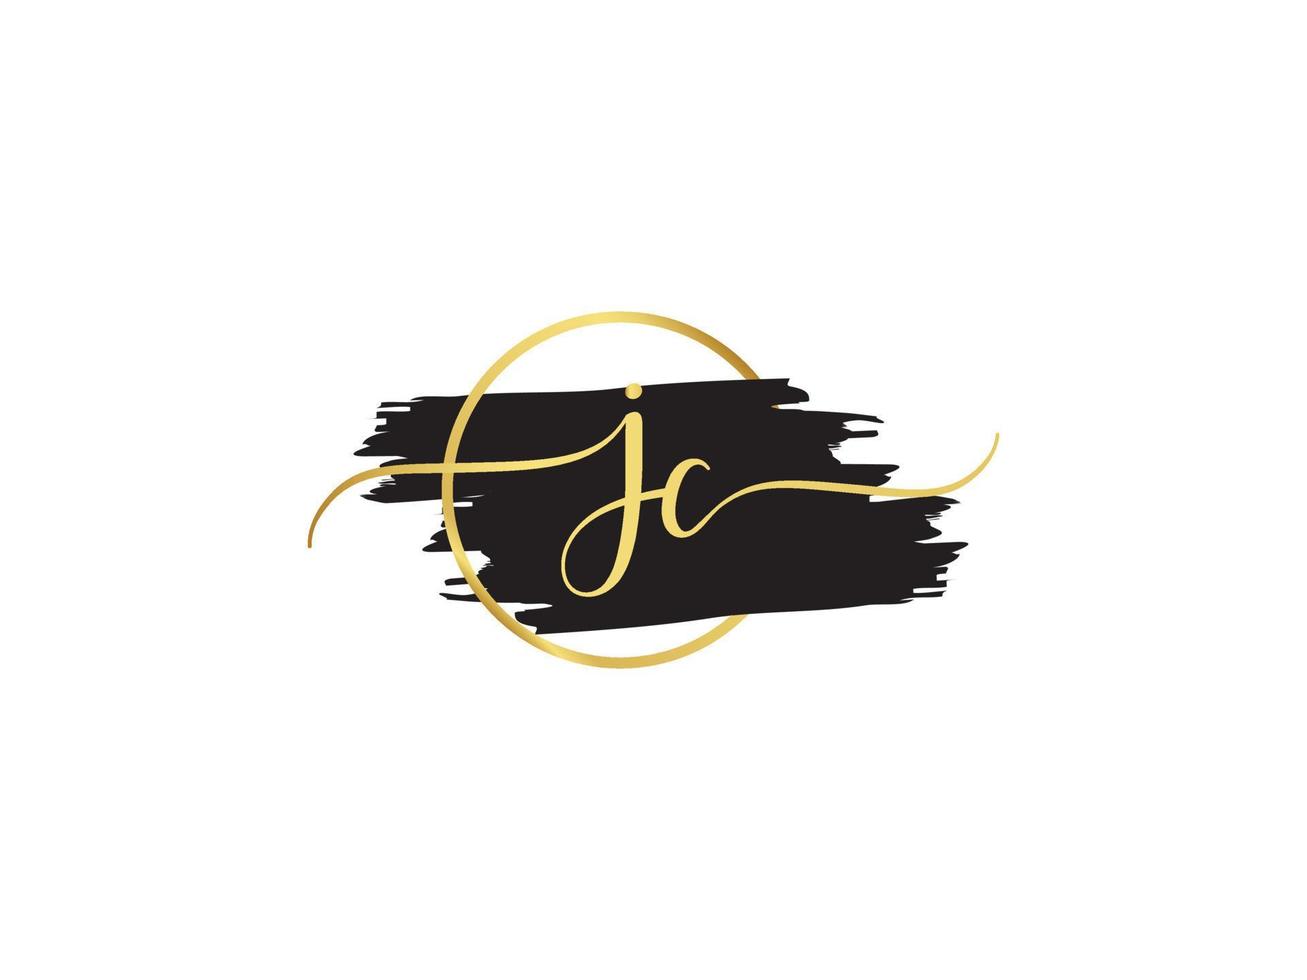 Monogram Jc Signature Logo, Luxury JC Brush And Golden Signature logo vector